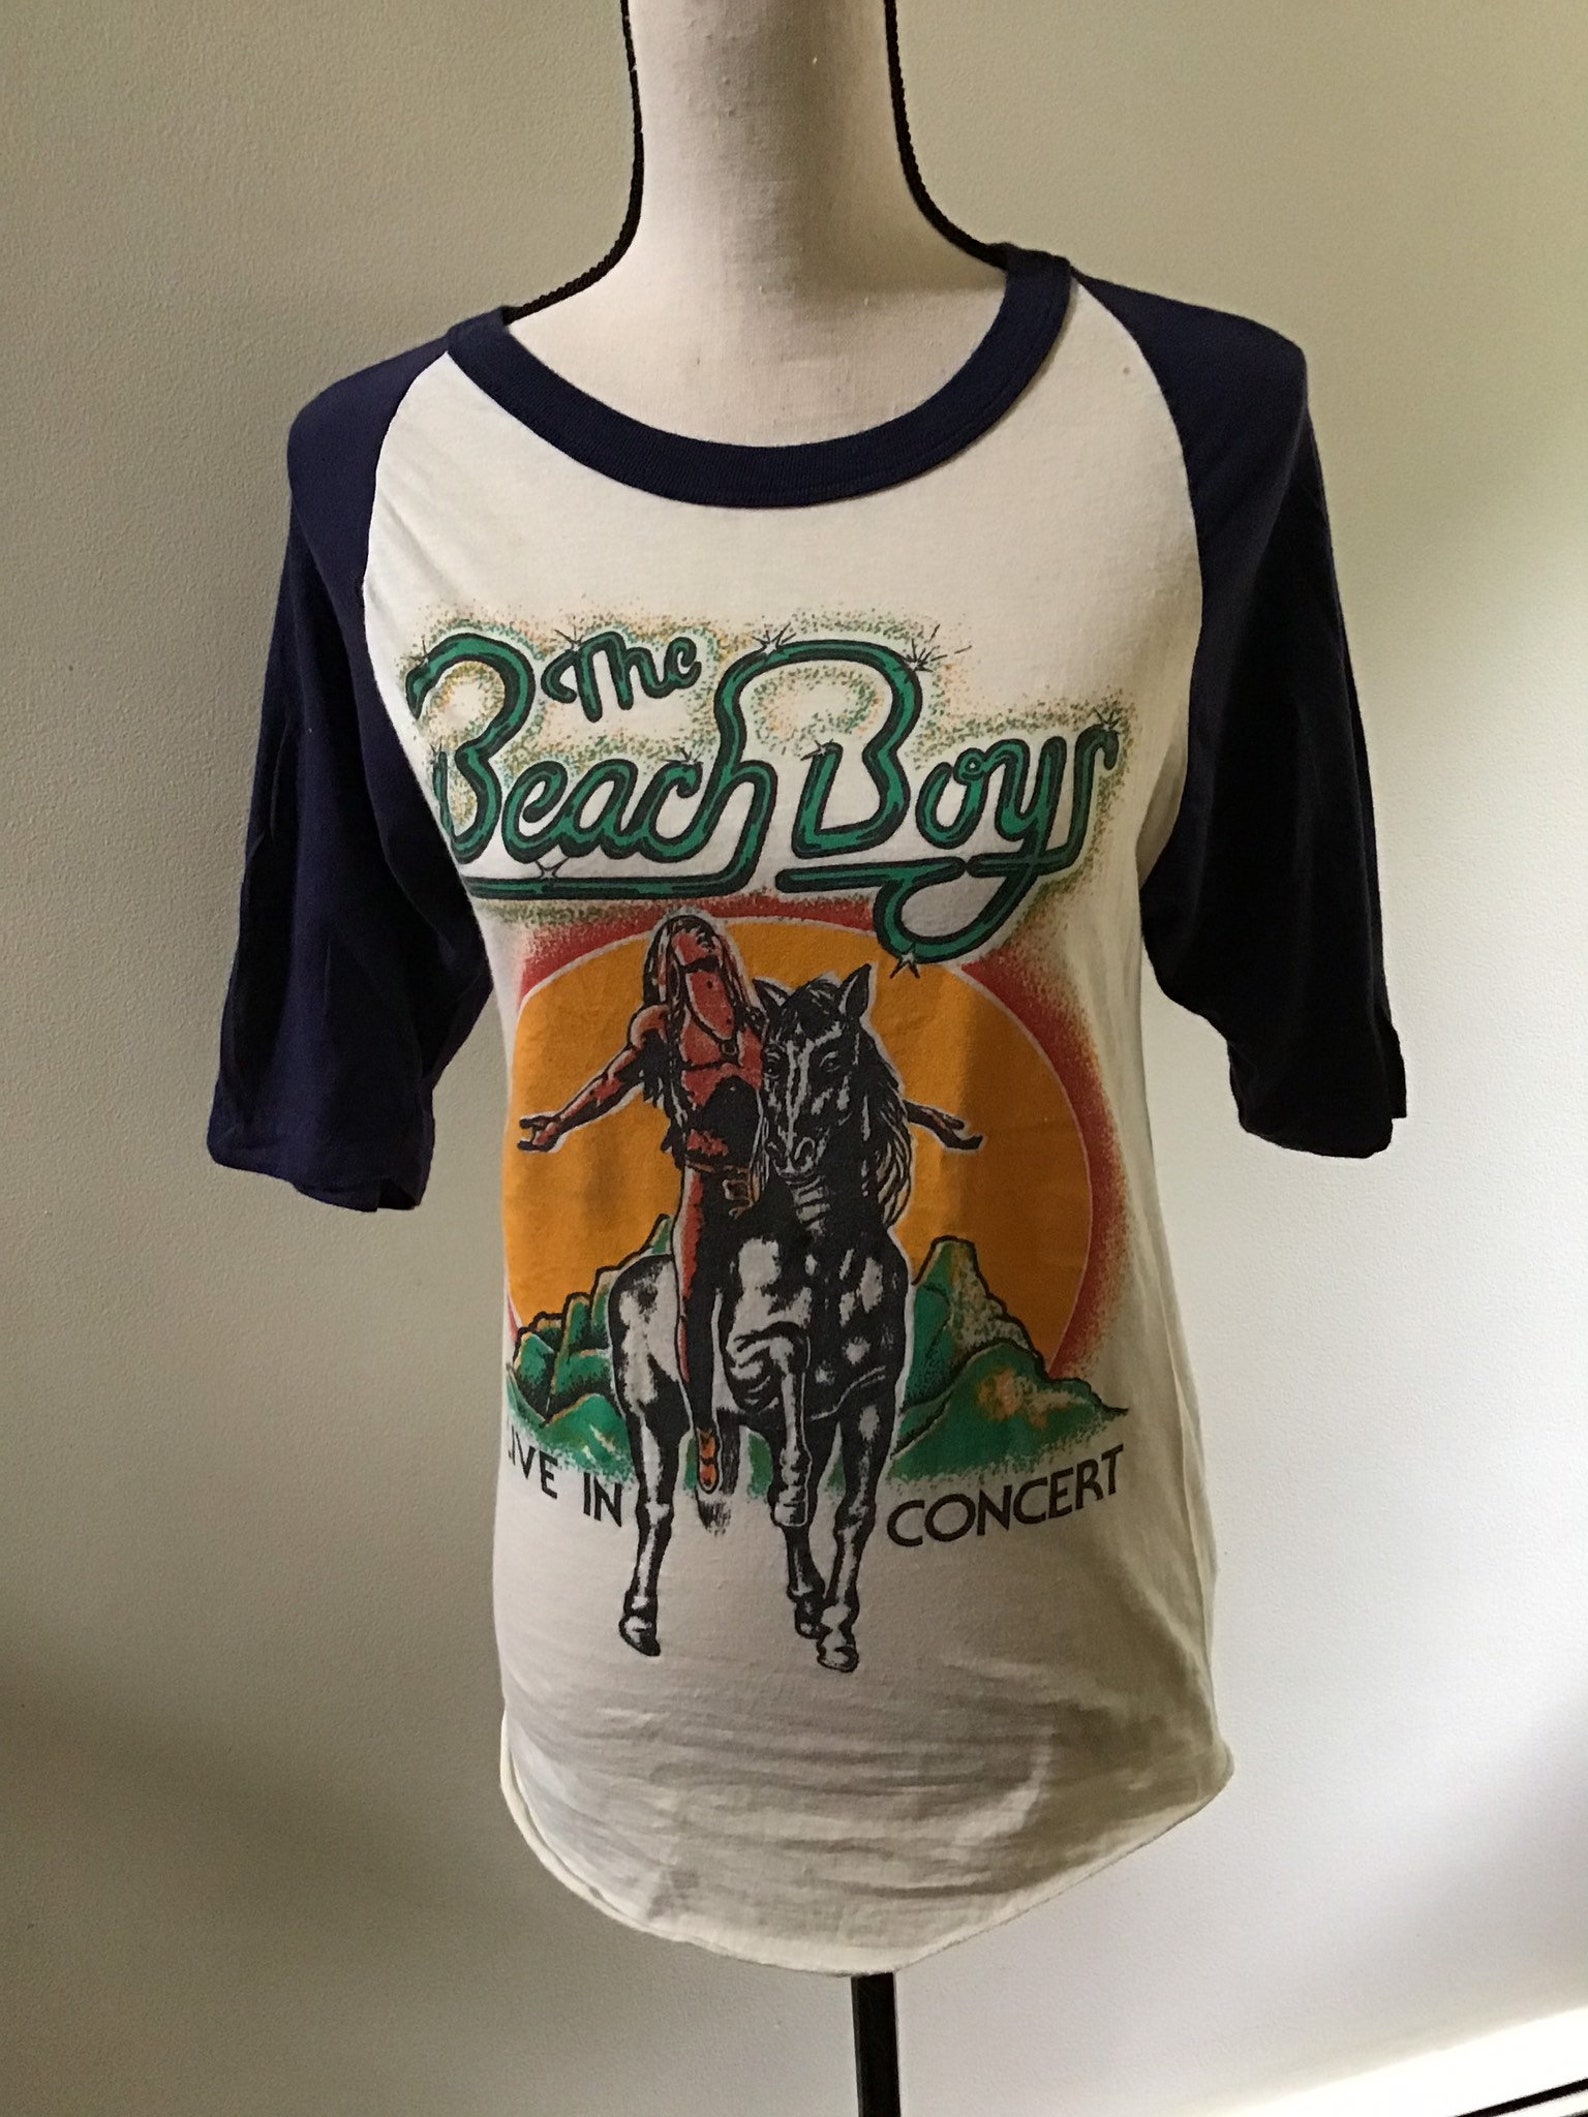 Camiseta Vintage Beach Boys 1979, gira de conciertos de verano sin fin ...